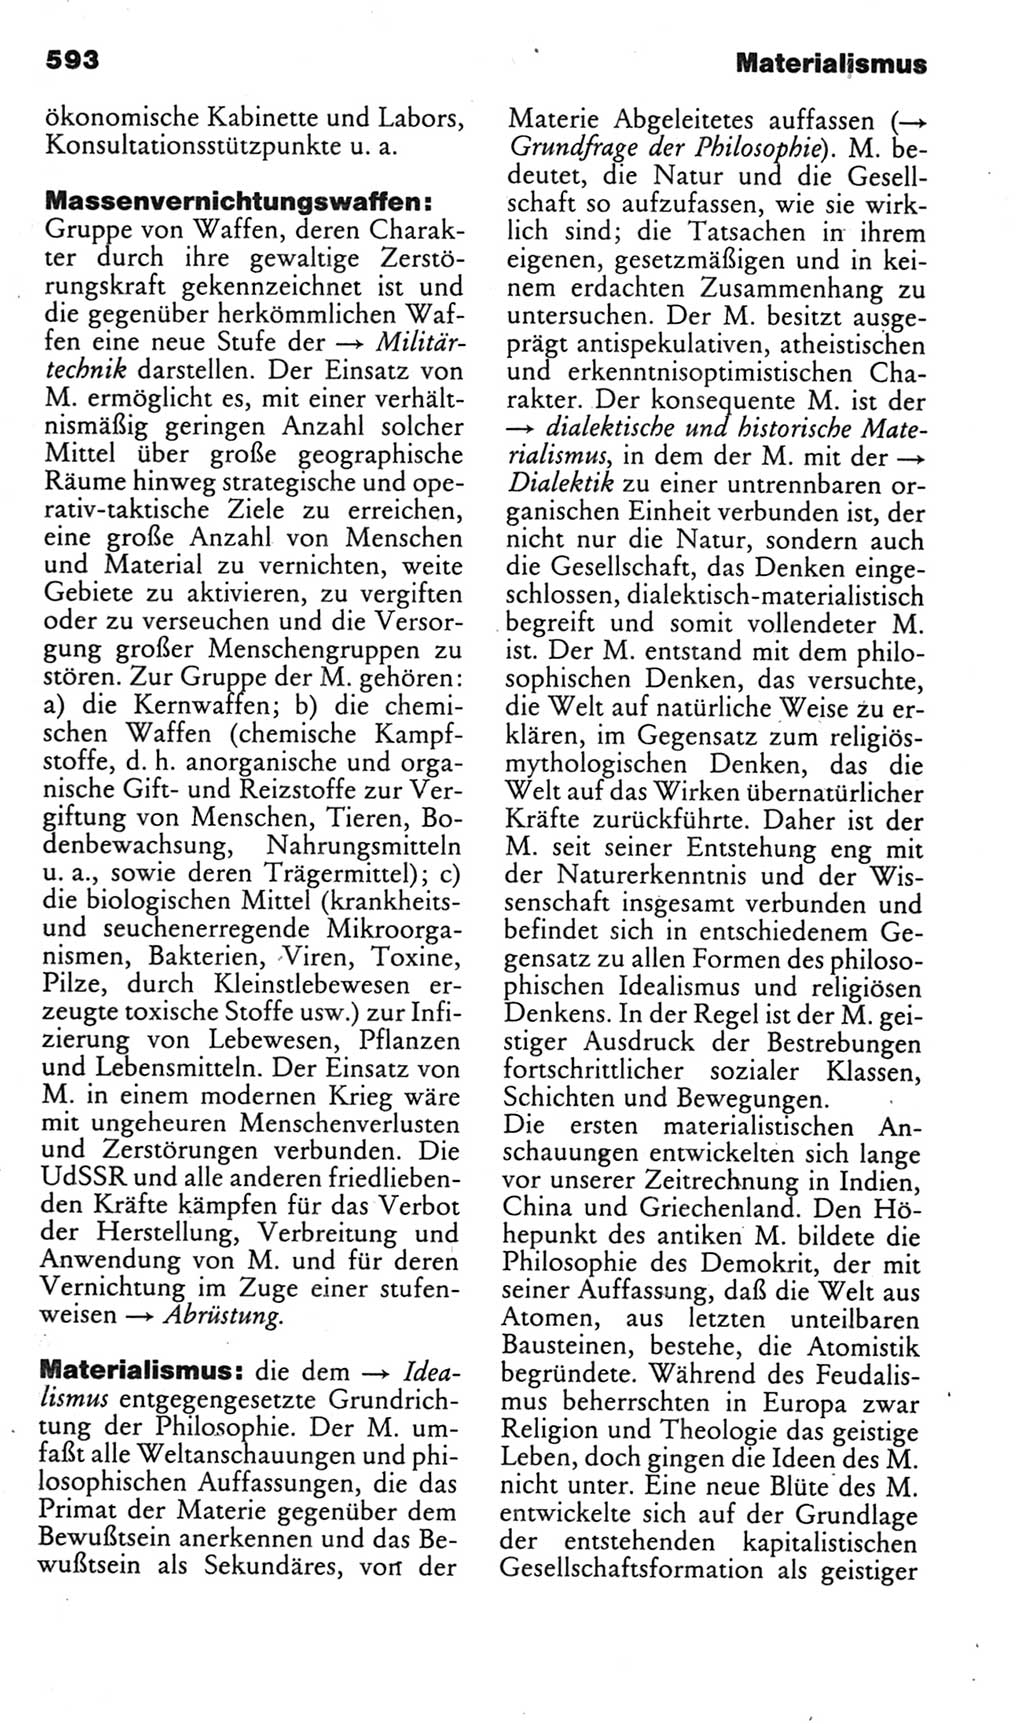 Kleines politisches Wörterbuch [Deutsche Demokratische Republik (DDR)] 1985, Seite 593 (Kl. pol. Wb. DDR 1985, S. 593)